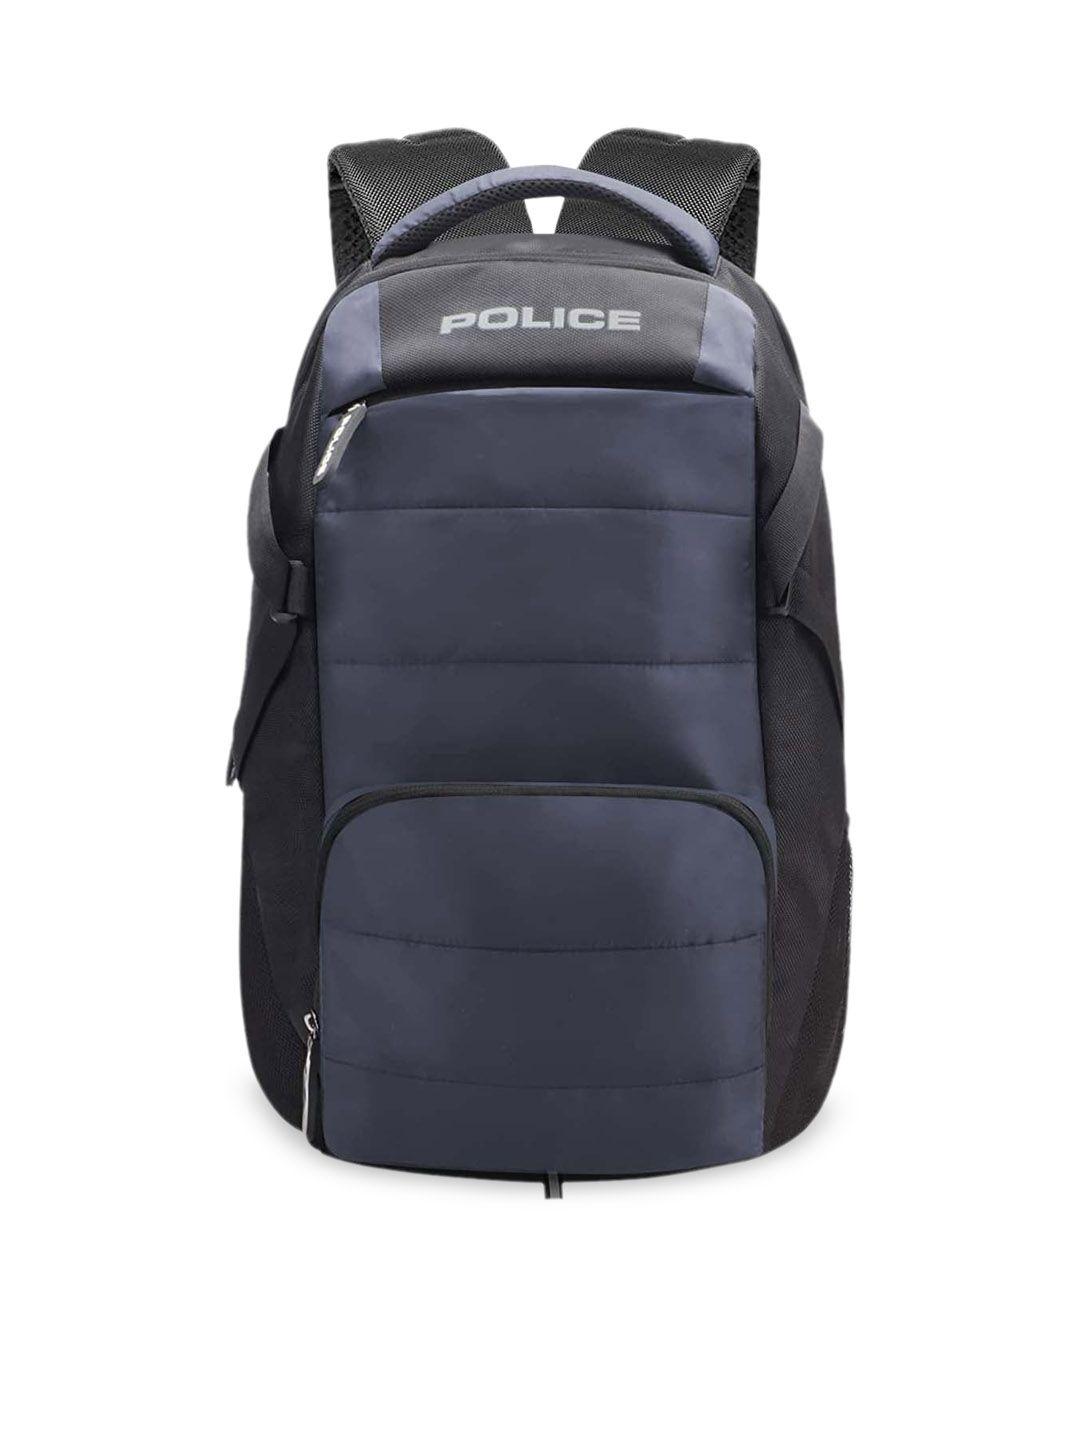 police-unisex-black-&-blue-30-ltrs-laptop-backpack